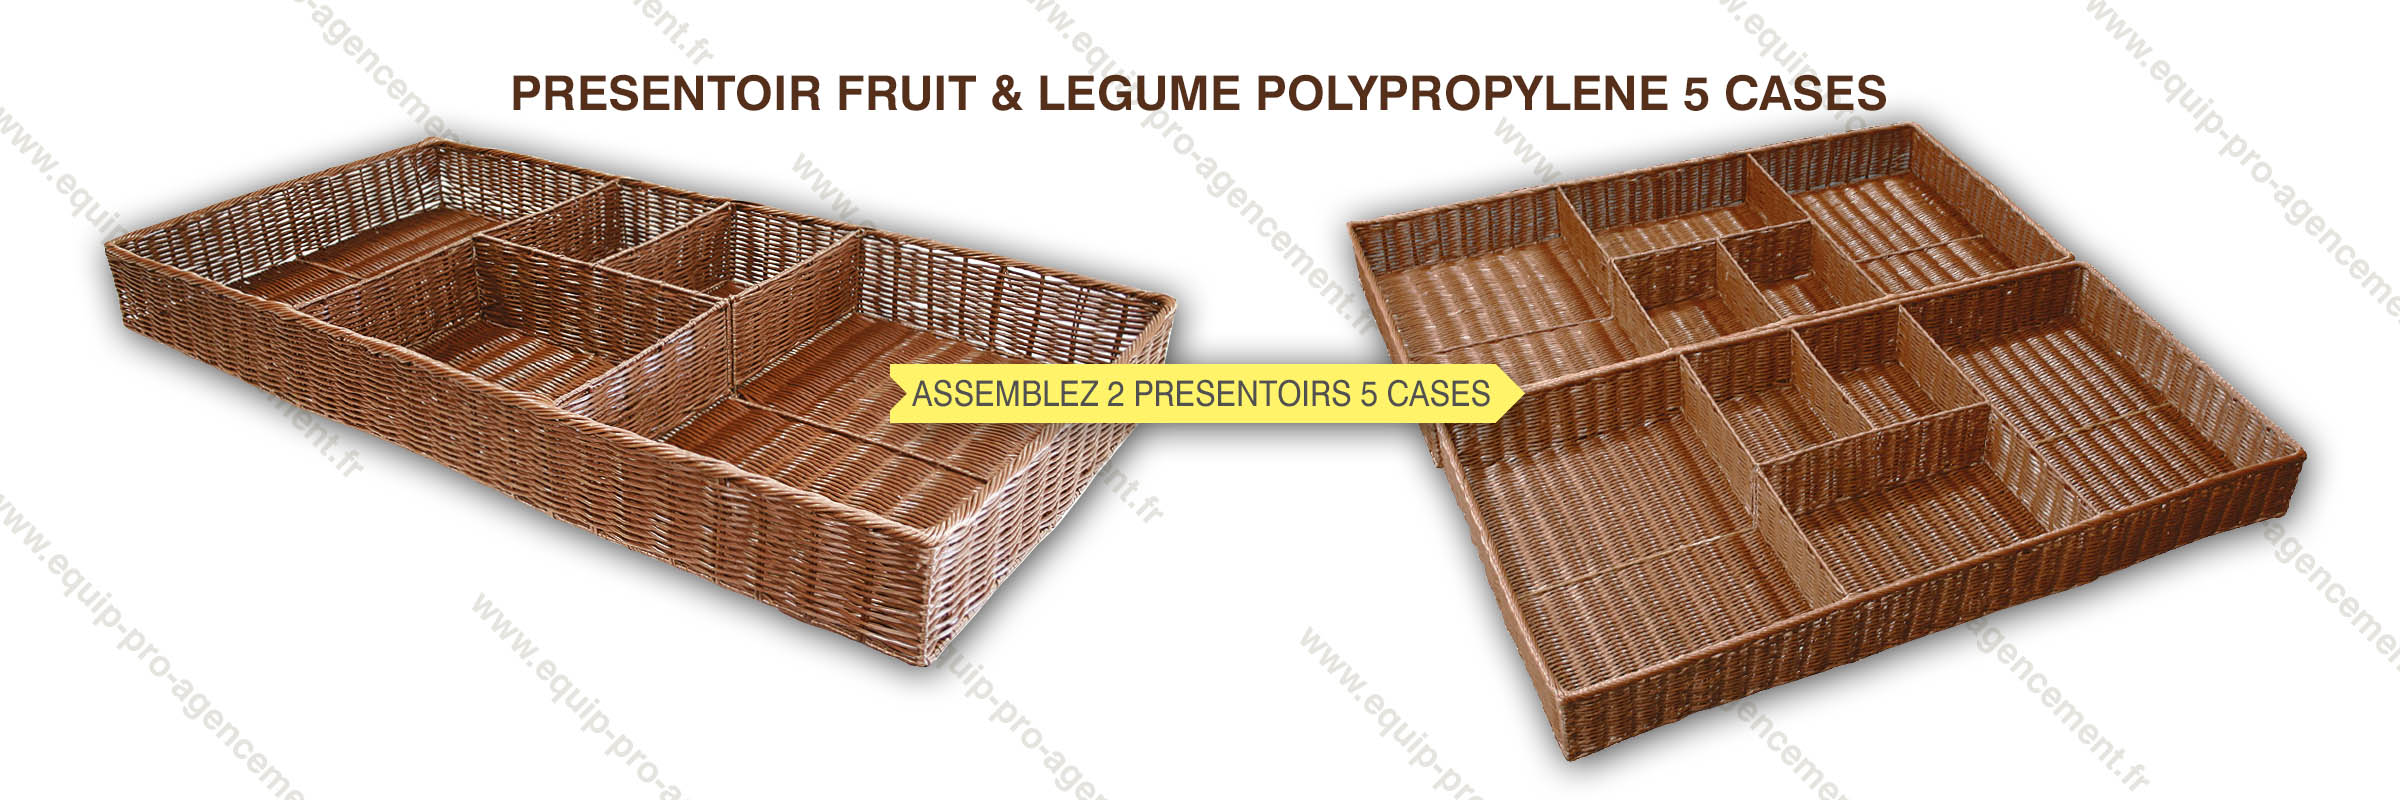 présentoir 5 cases polypropylène imitation osier ton chocolat fruit et légumes